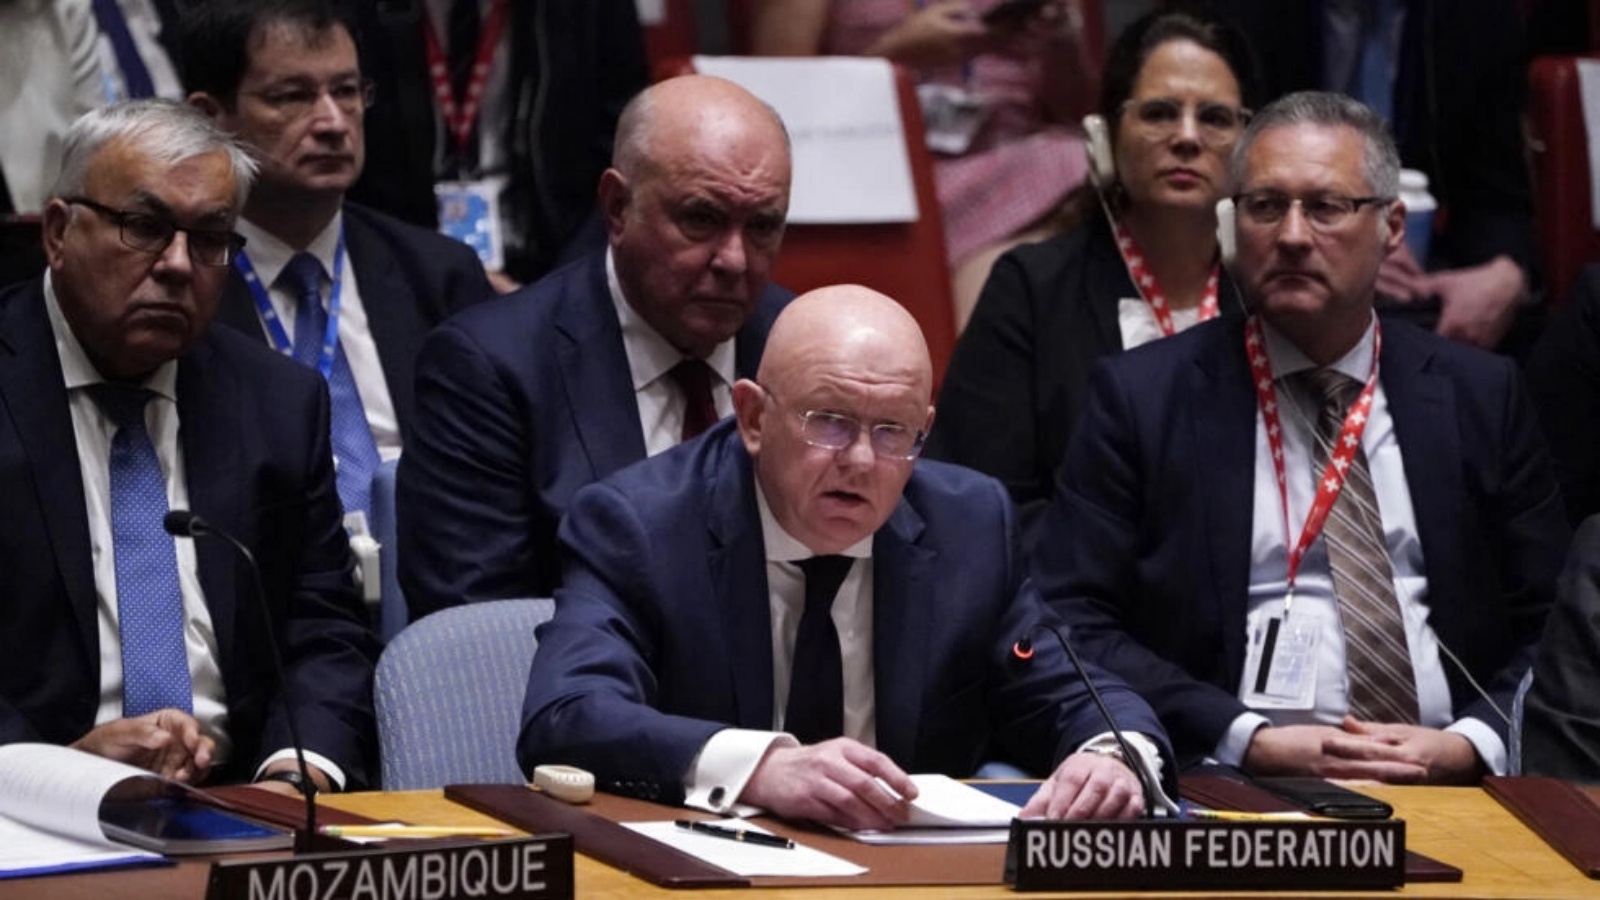 سفير روسيا لدى الأمم المتحدة فاسيلي نيبينزيا يتحدث خلال جلسة مجلس الأمن الدولي